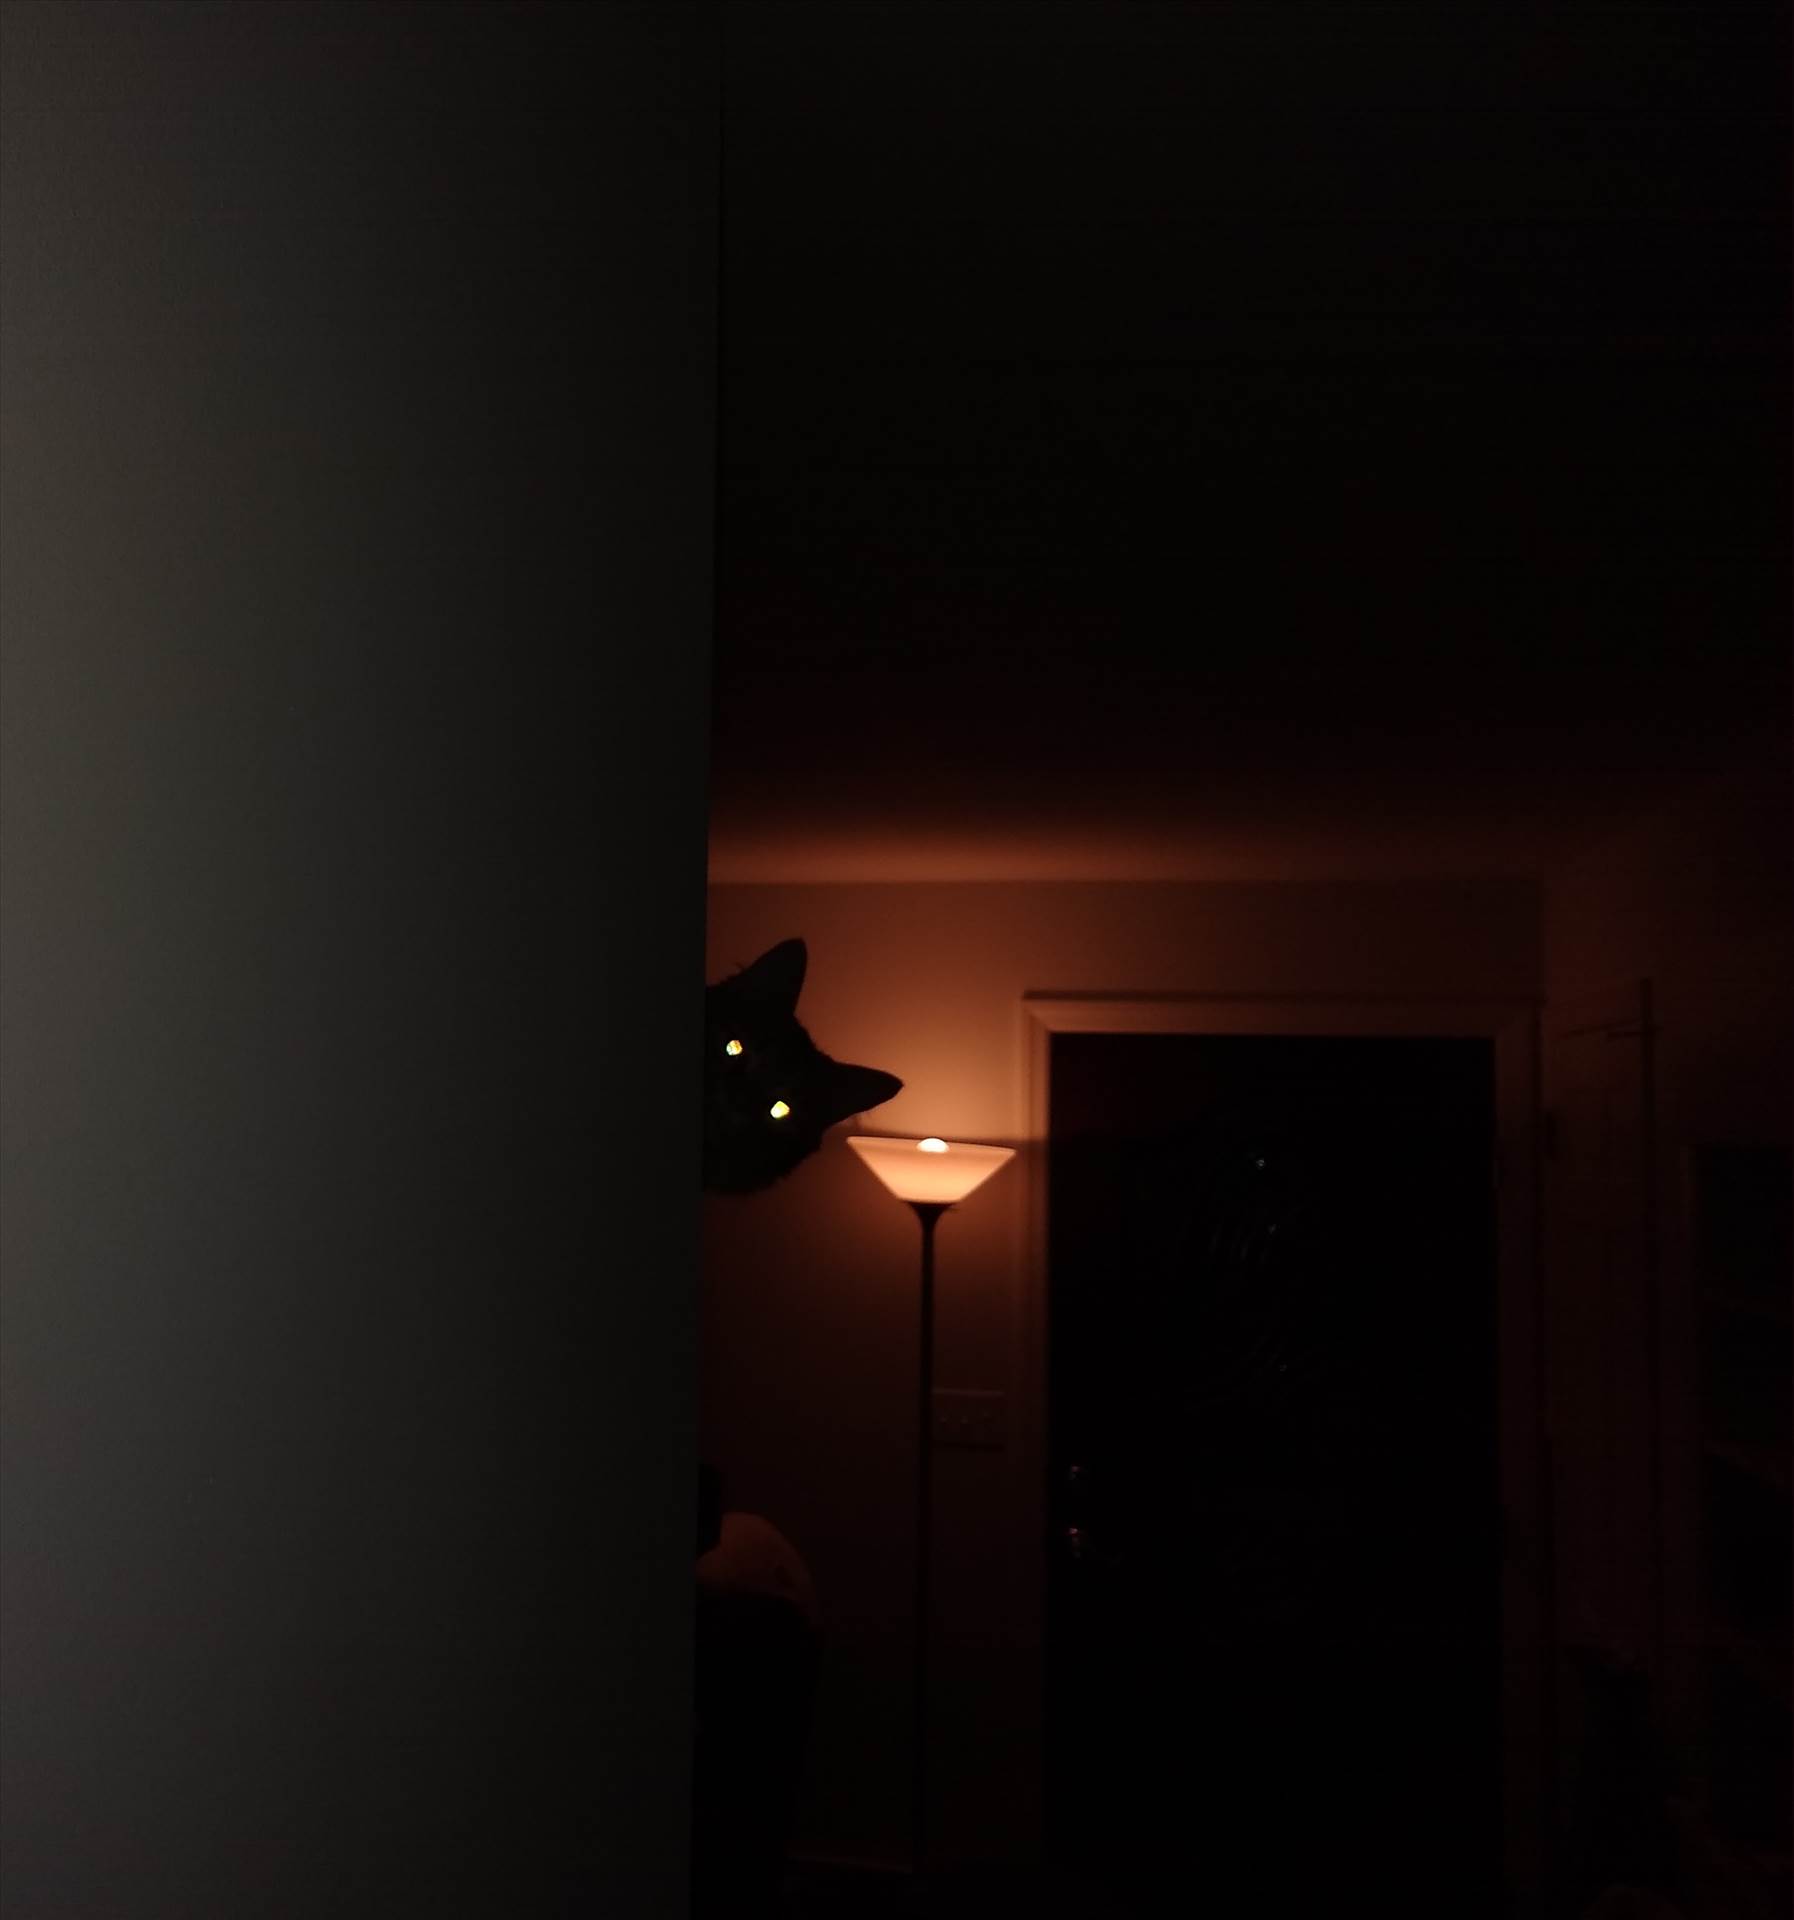 Spooky cat.jpg  by Bouncy